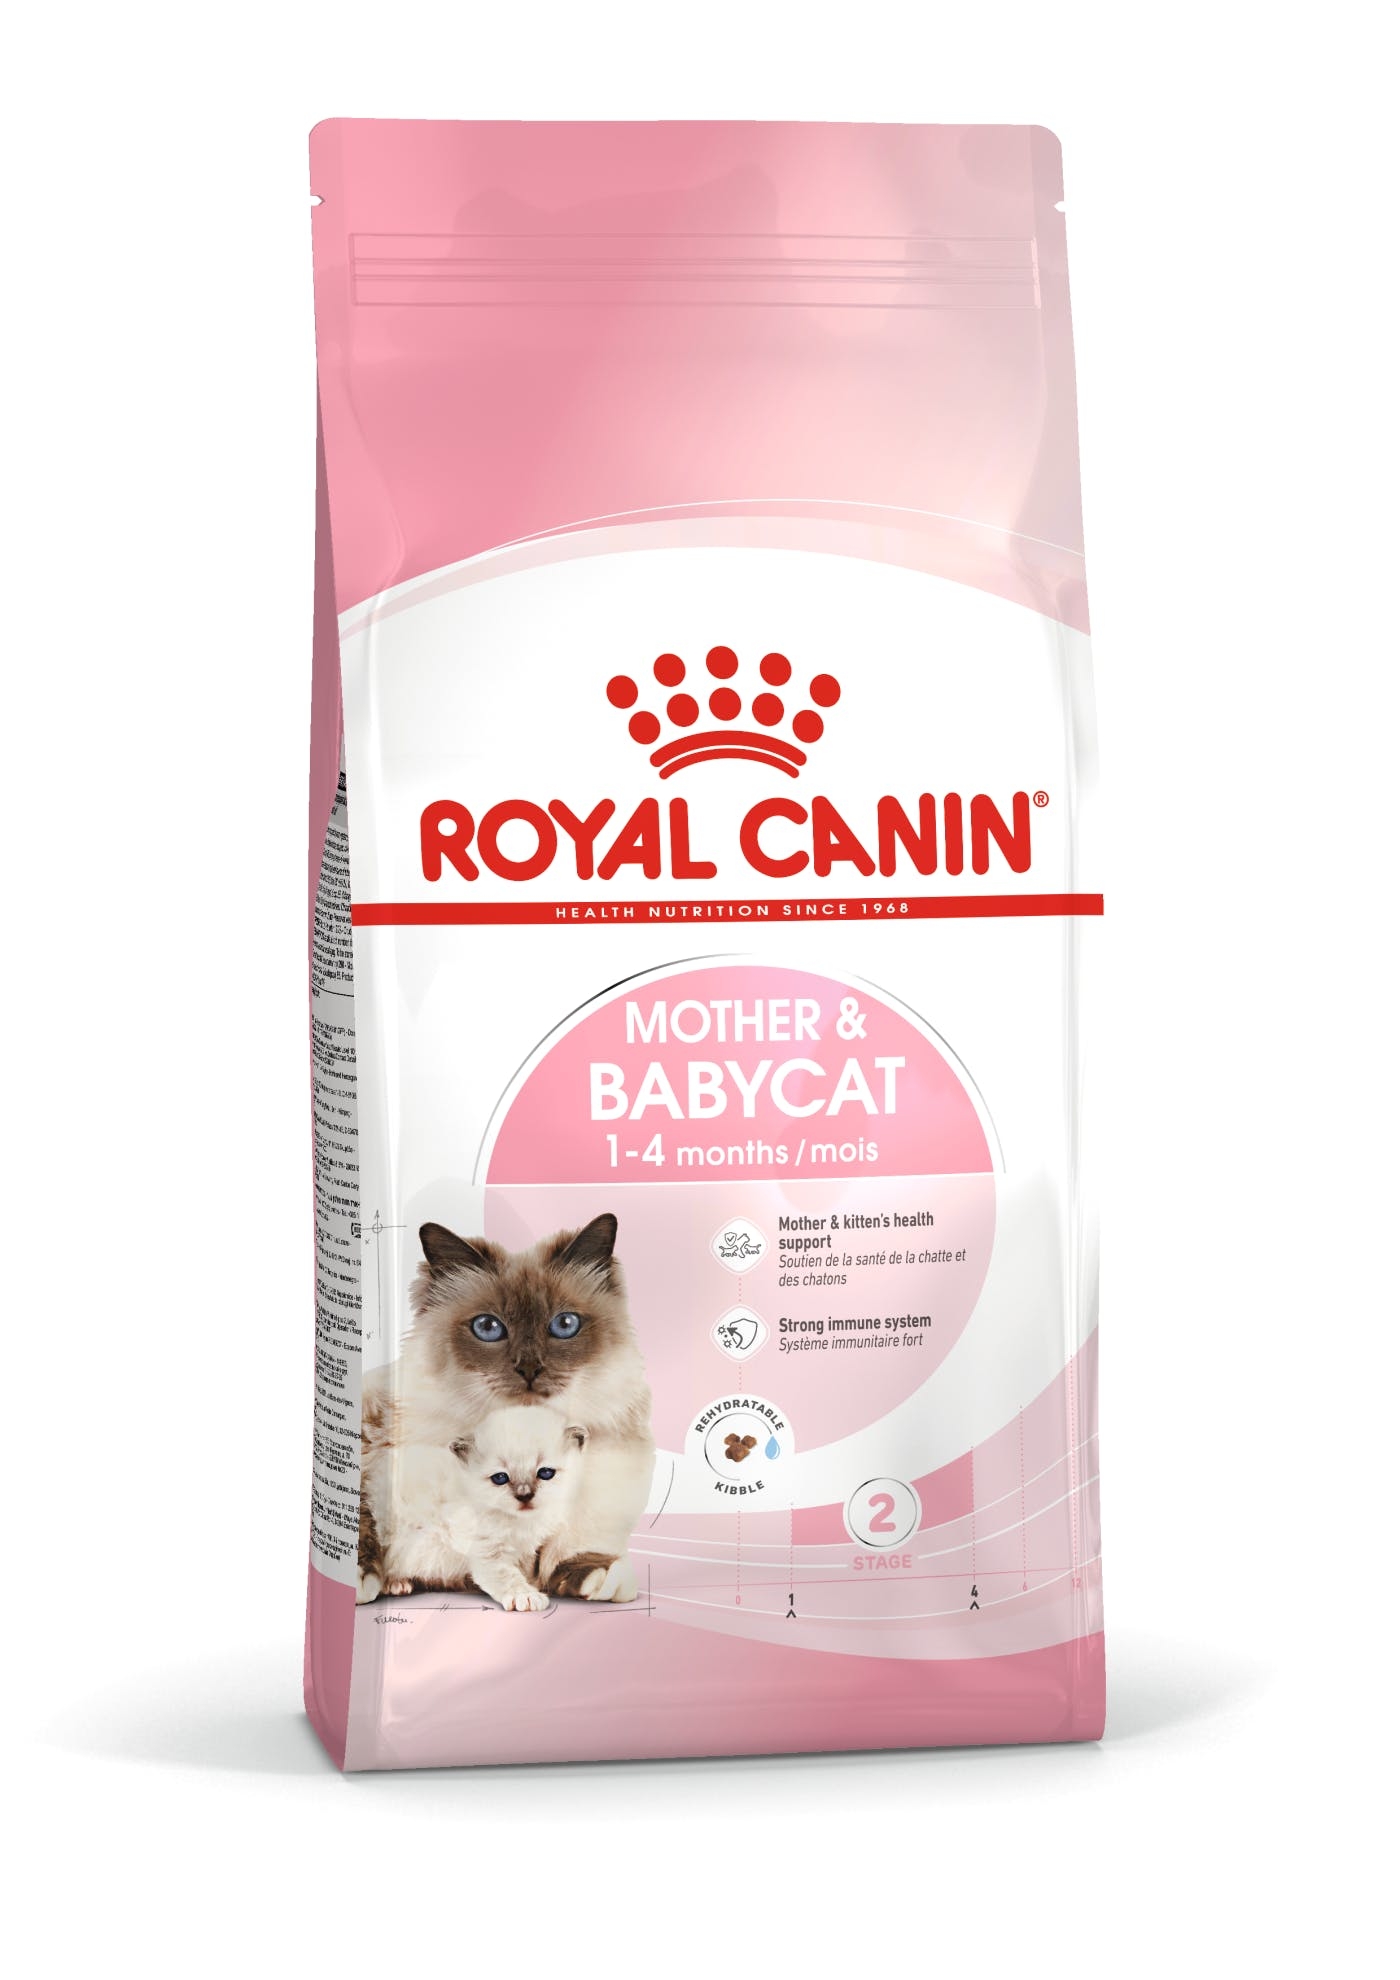 Se Royal Canin Mother & Babycat til drægtige og diegivende katte samt deres killinger fra 1-4 måneder hos Alttilhundogkat.dk